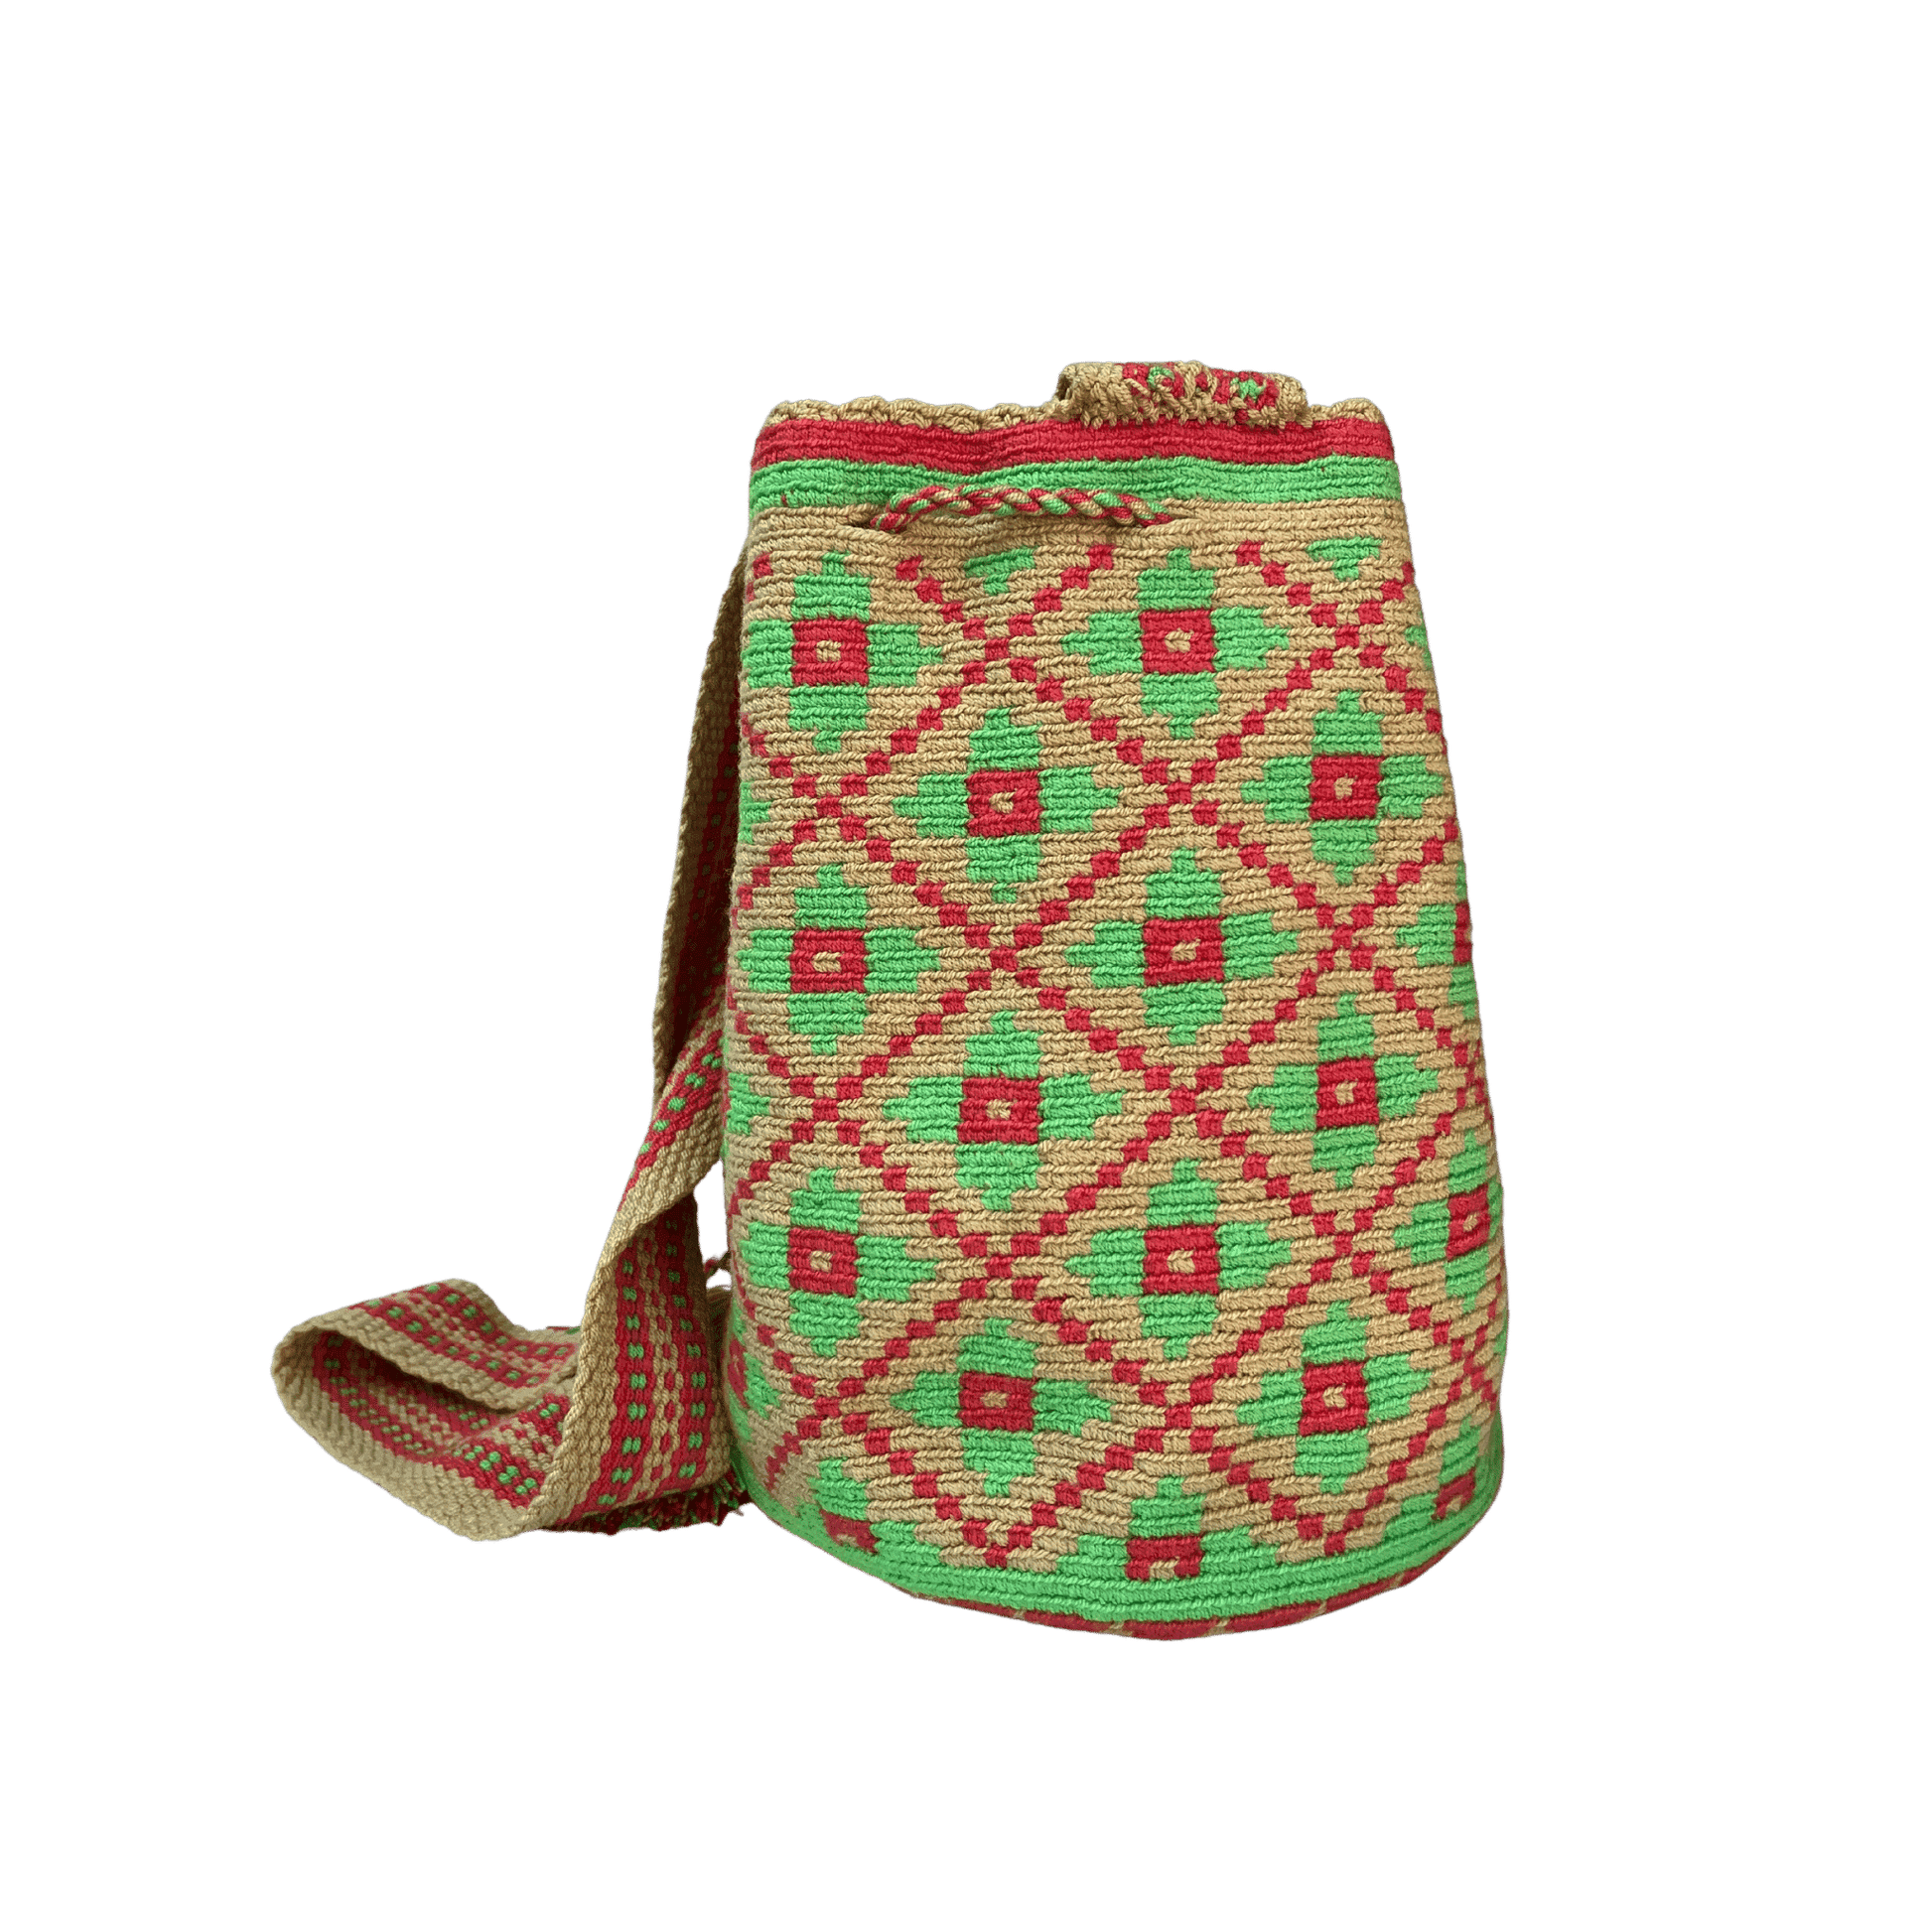 Mochila wayuu tejida a una hebra con diseño de flores en colores rojo y verde enmarcadas en rombos